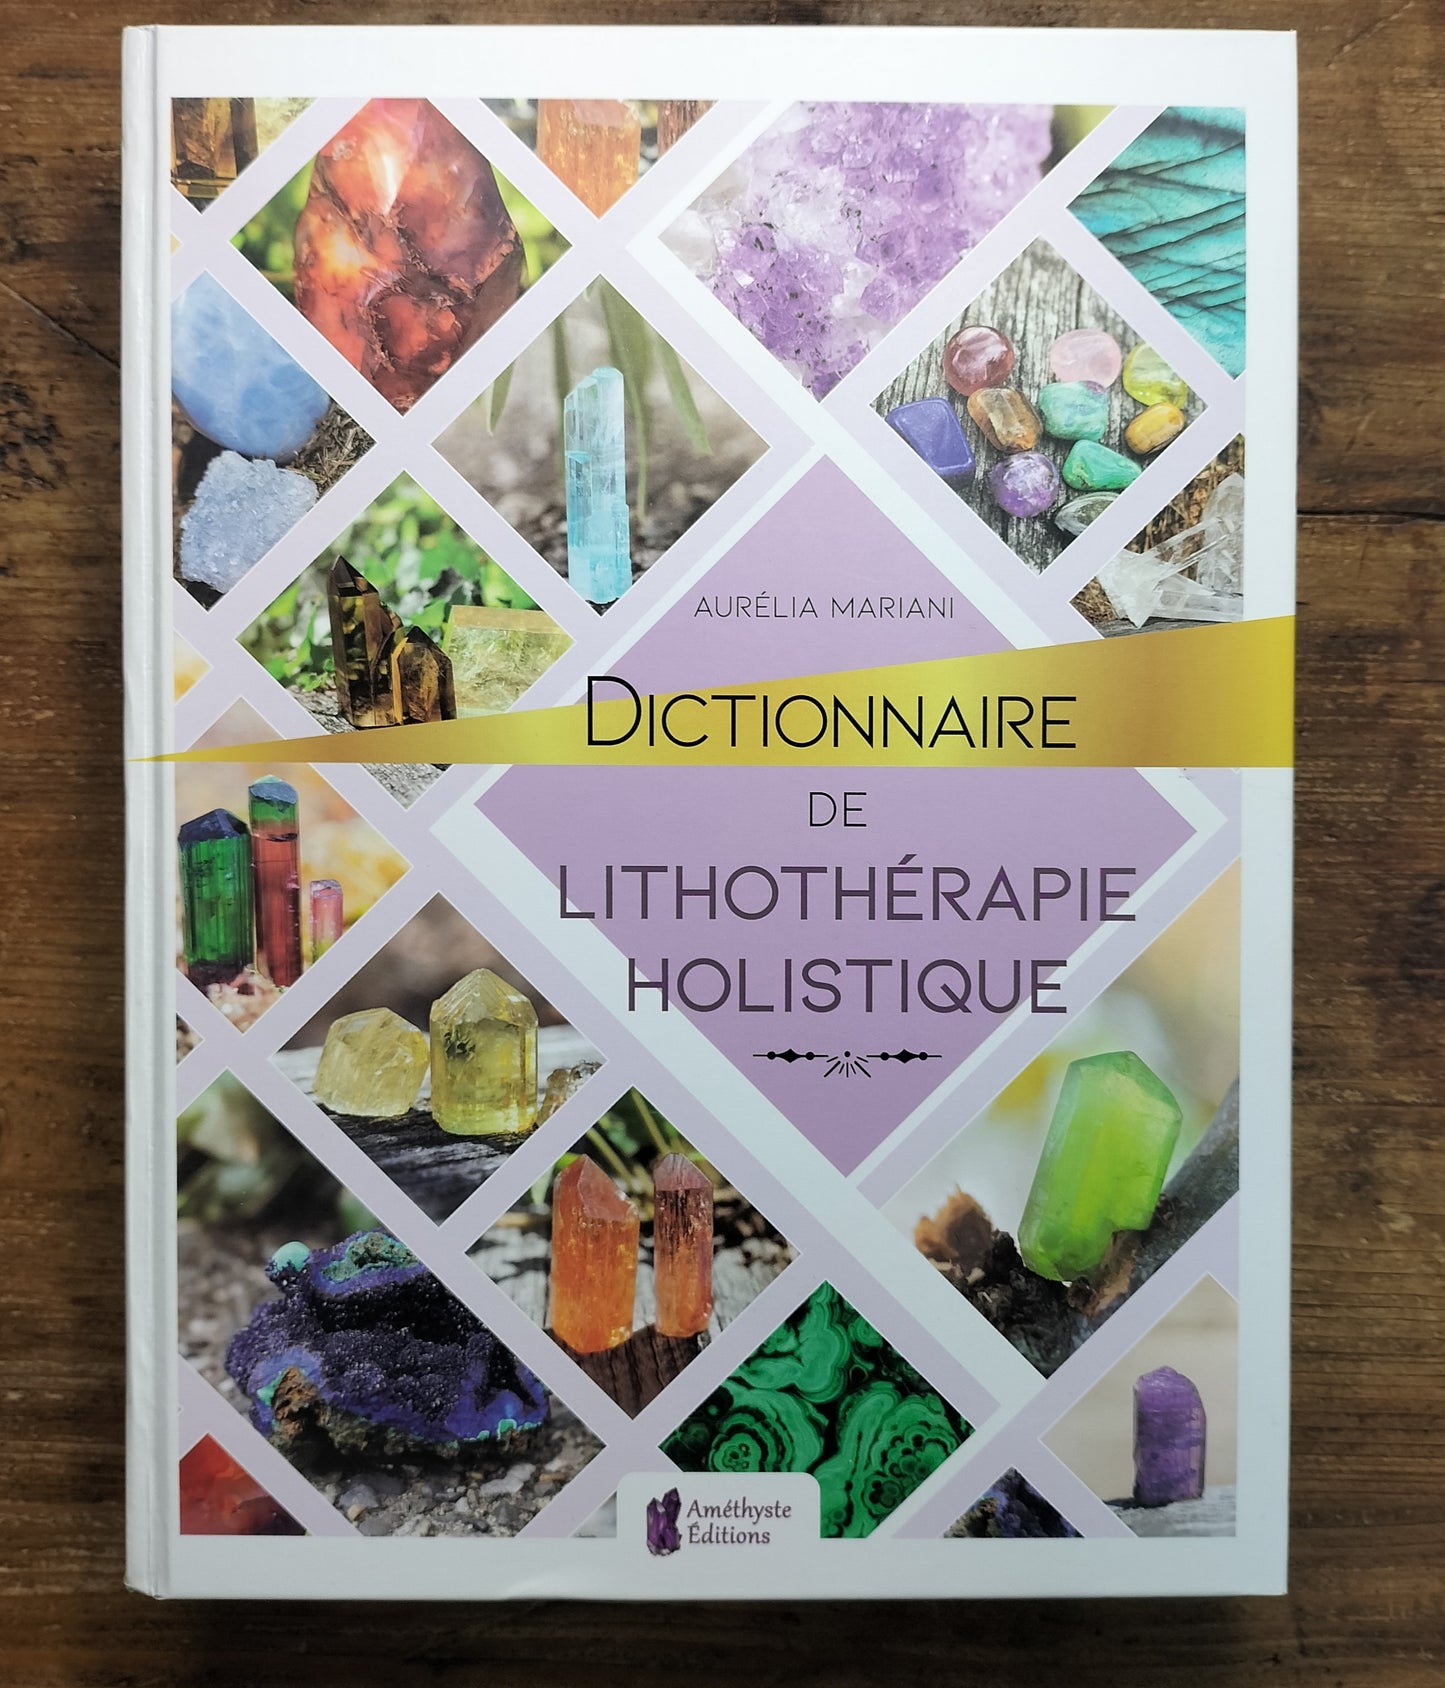 Dictionnaire de lithothérapie holistique